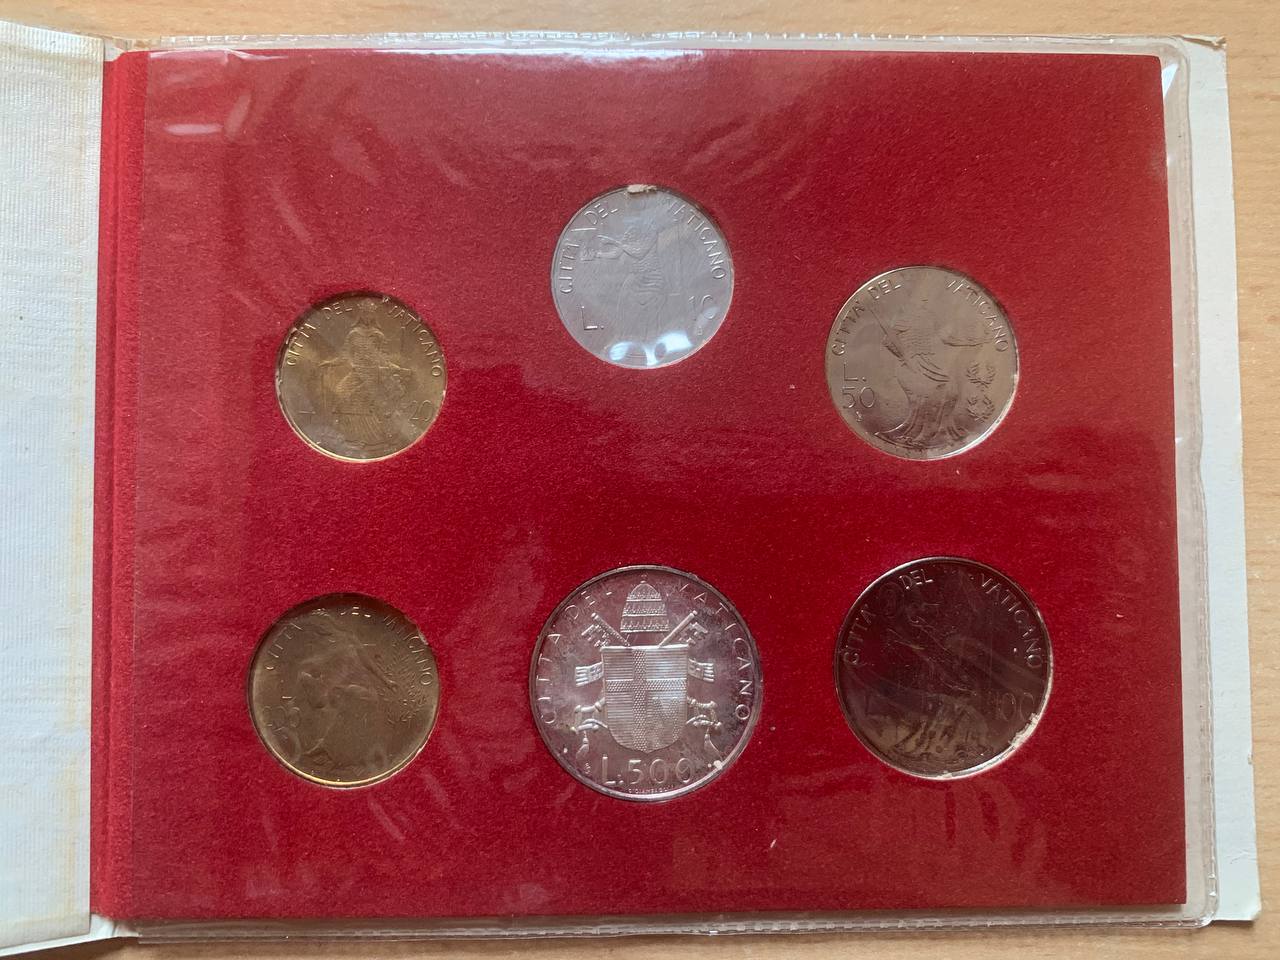  Jahresset von Vatikan 1980 BU (6 Münzen)   